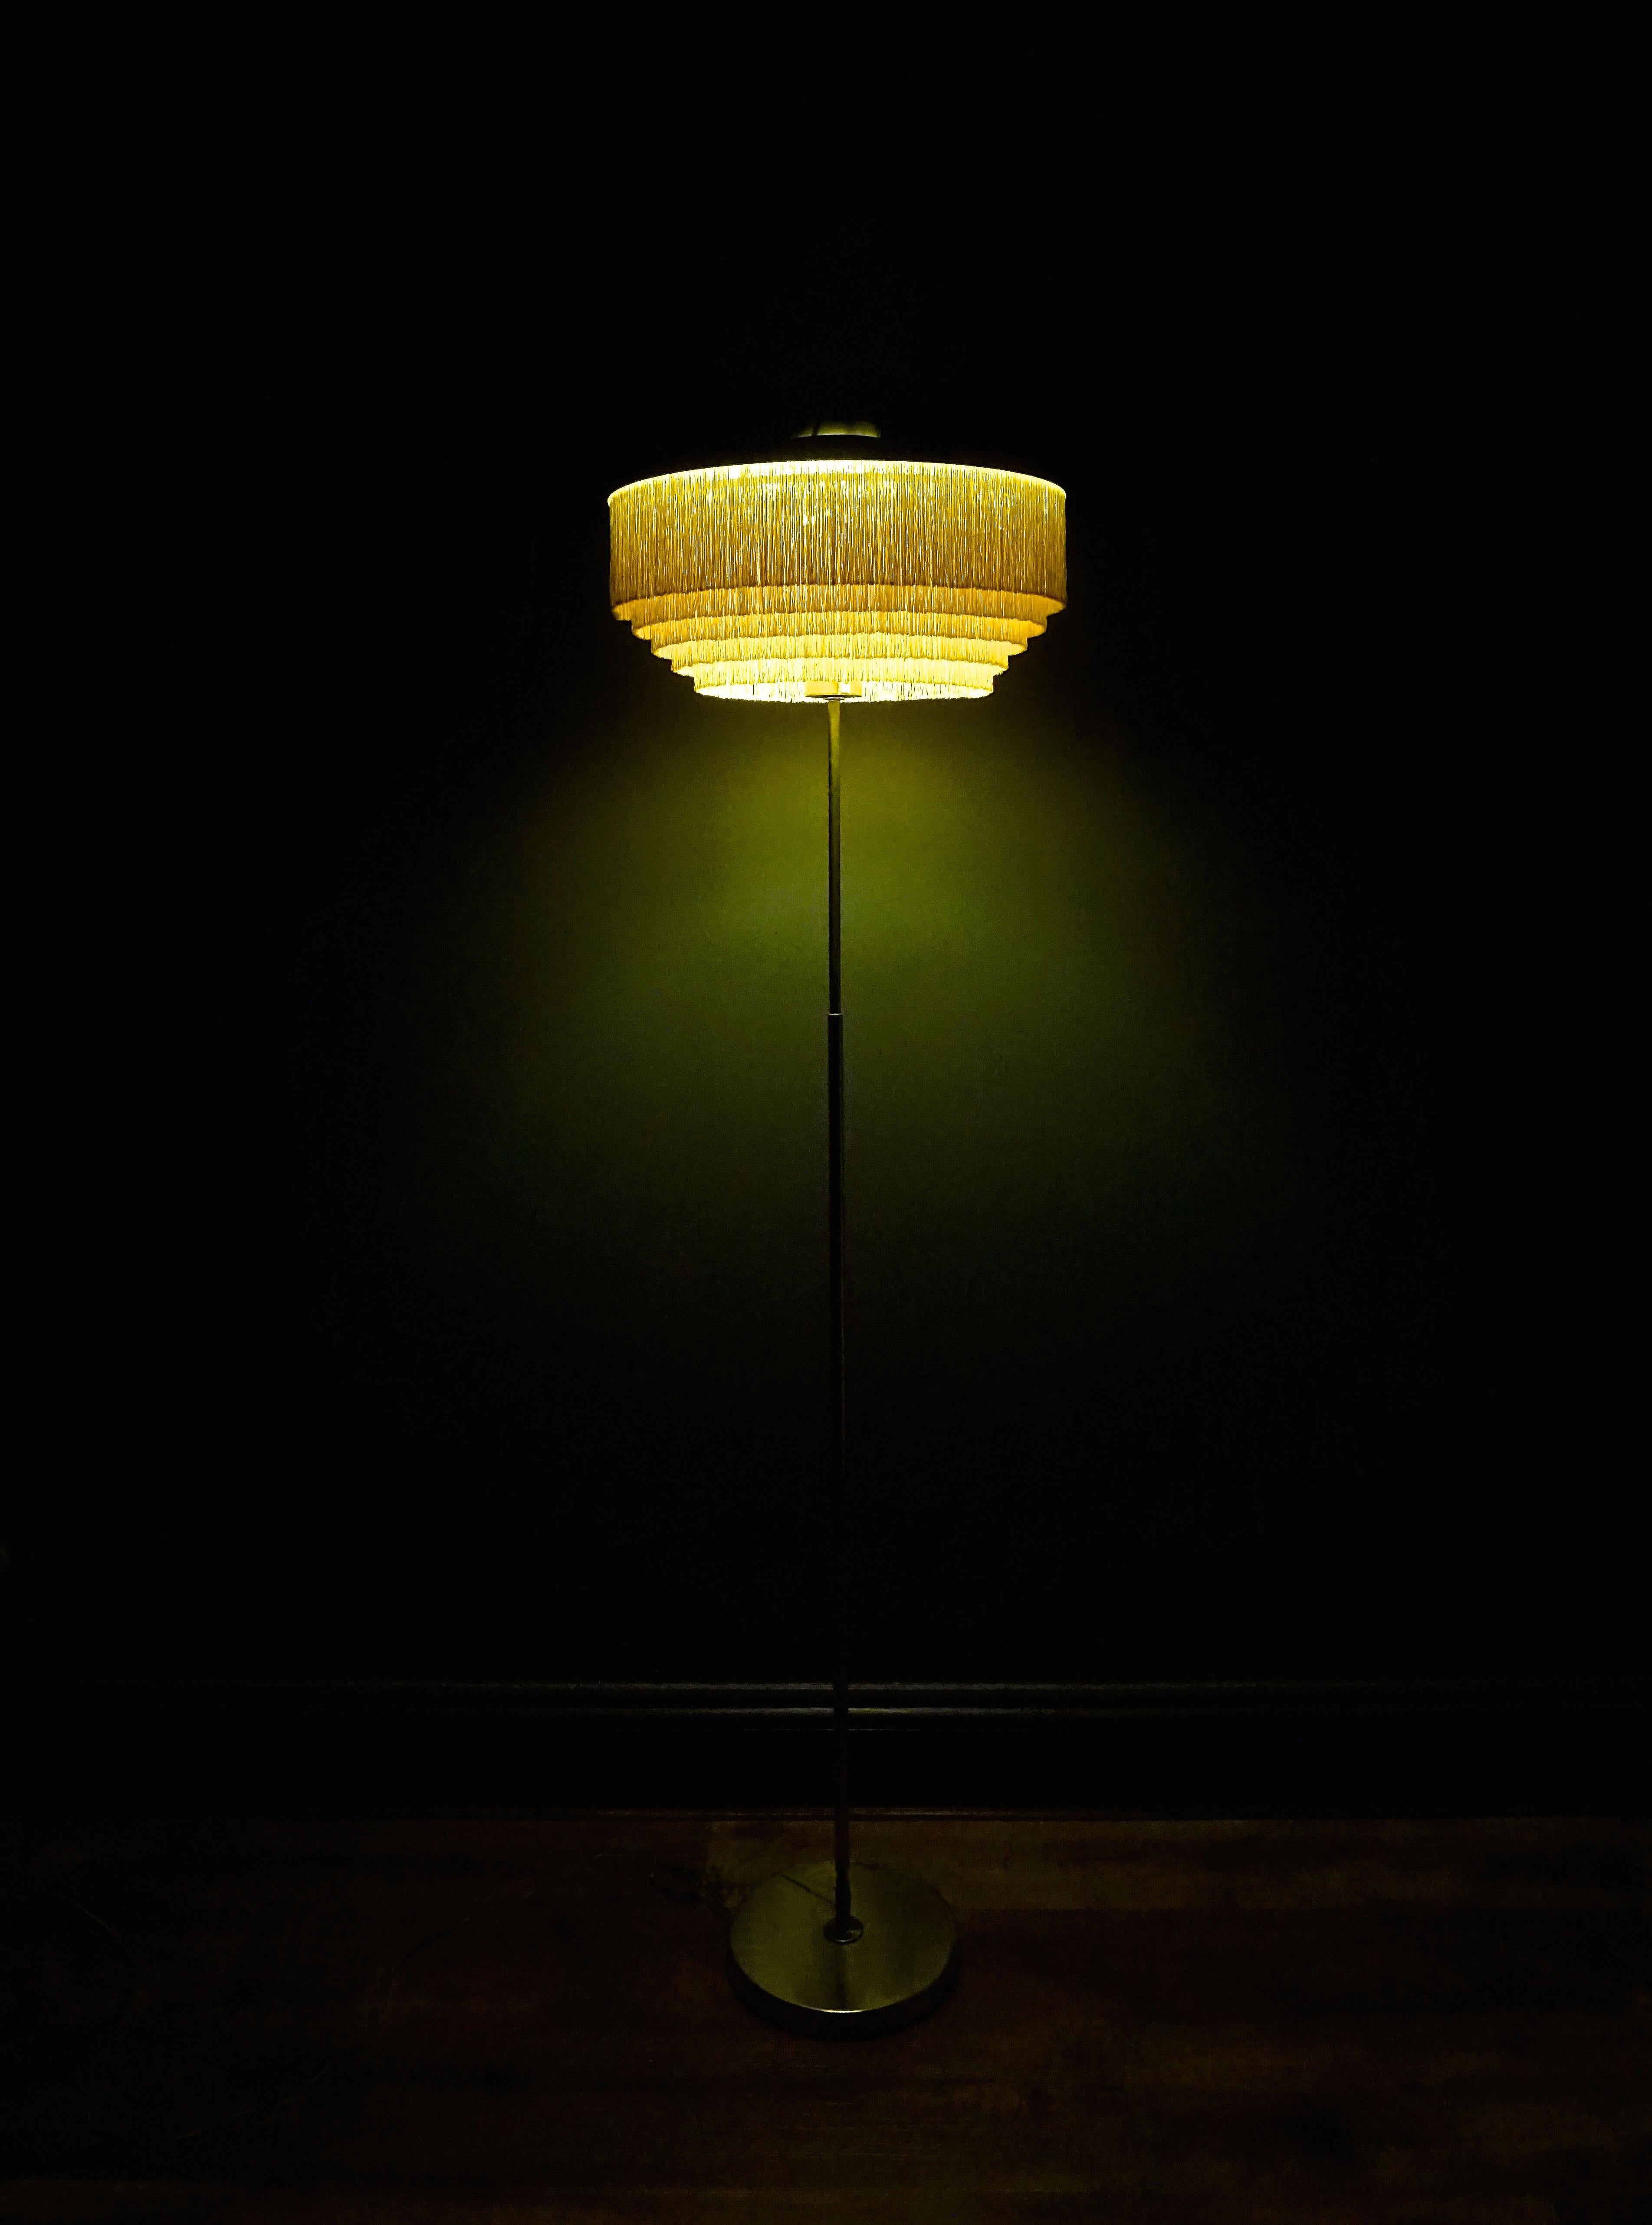 Ce lampadaire, modèle G-110, a été conçu par Hans-Agne Jakobsson et produit par Hans-Agne Jakobsson à Markaryd, en Suède.
- Laiton et franges
- vers les années 1960.
- mi-séculaire, scandinave
- Dimensions : H 137 x L 39cm de diamètre.